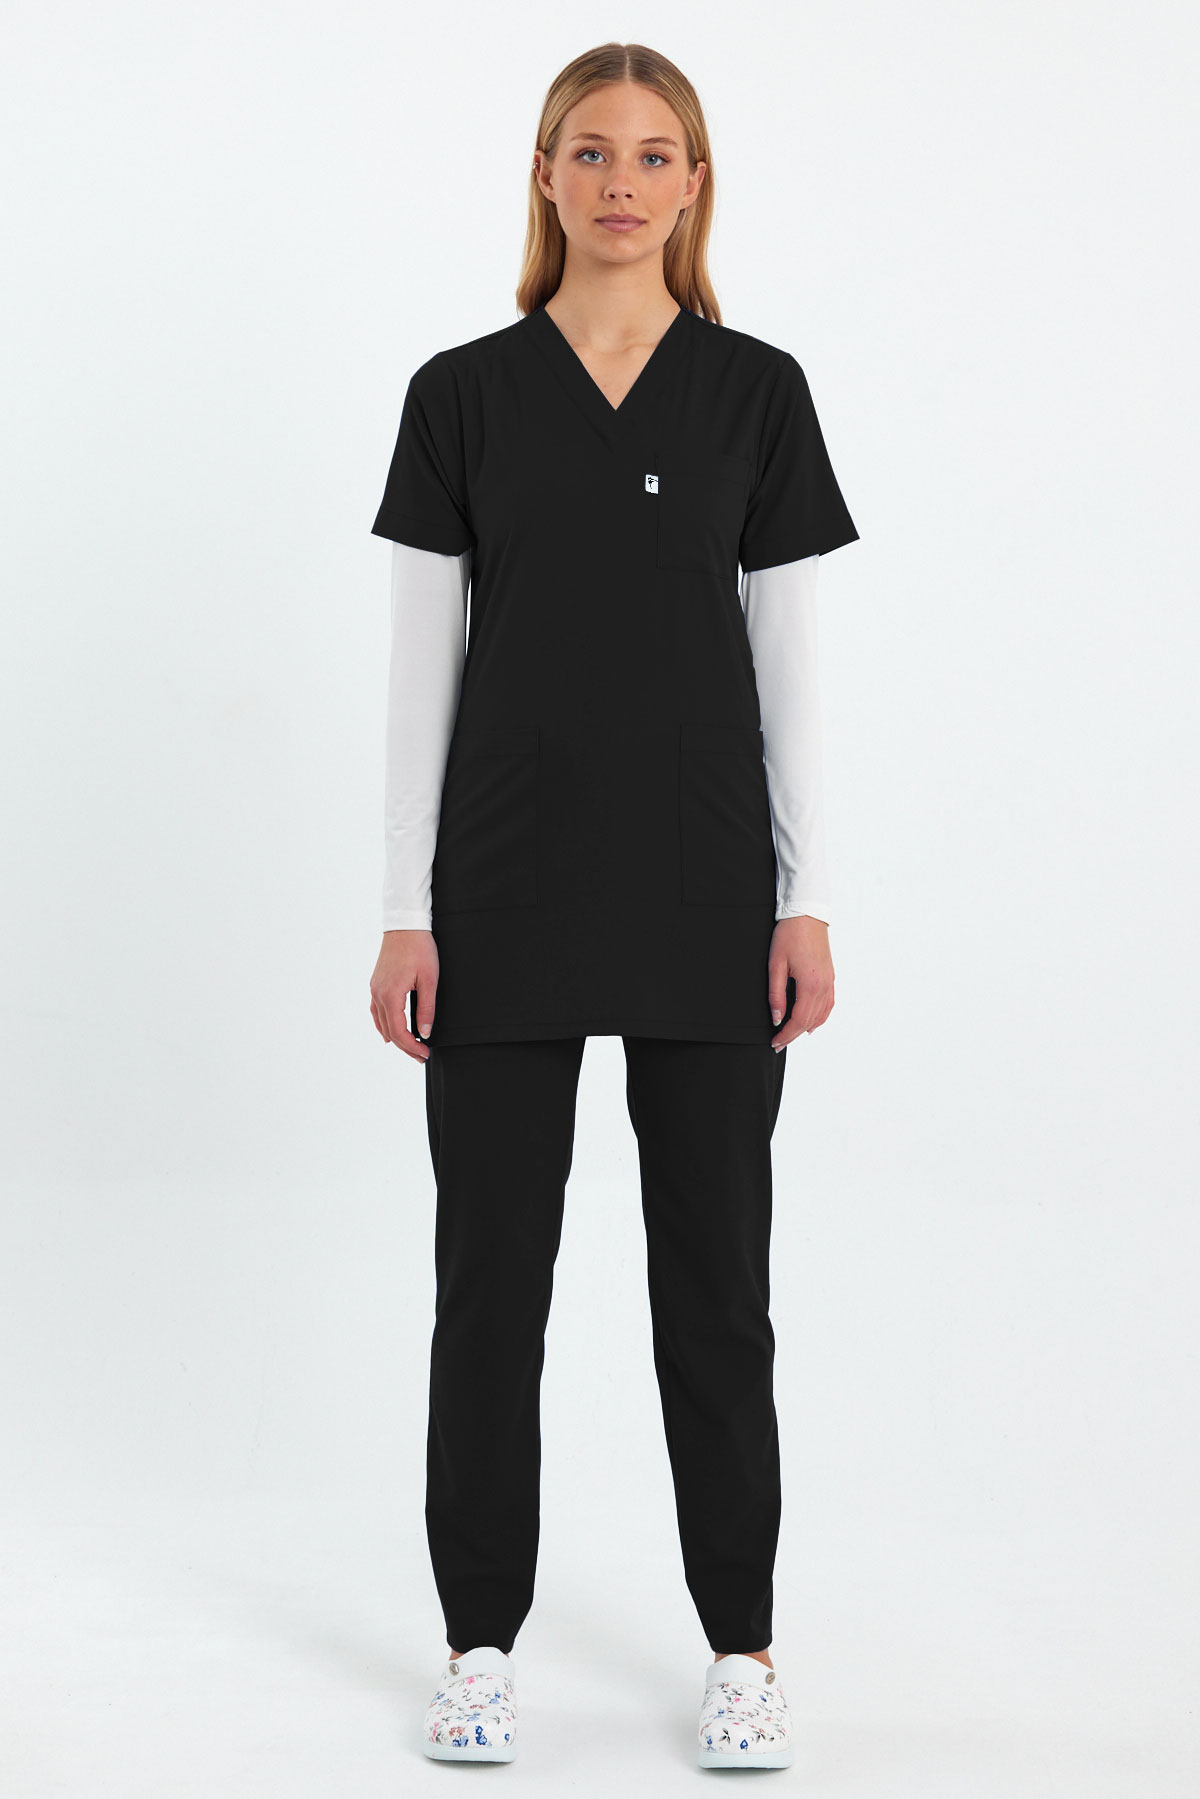 LAME 1004 Basic Likralı Siyah Scrubs Kısa Kol Tunik Hemşire Forması Takım